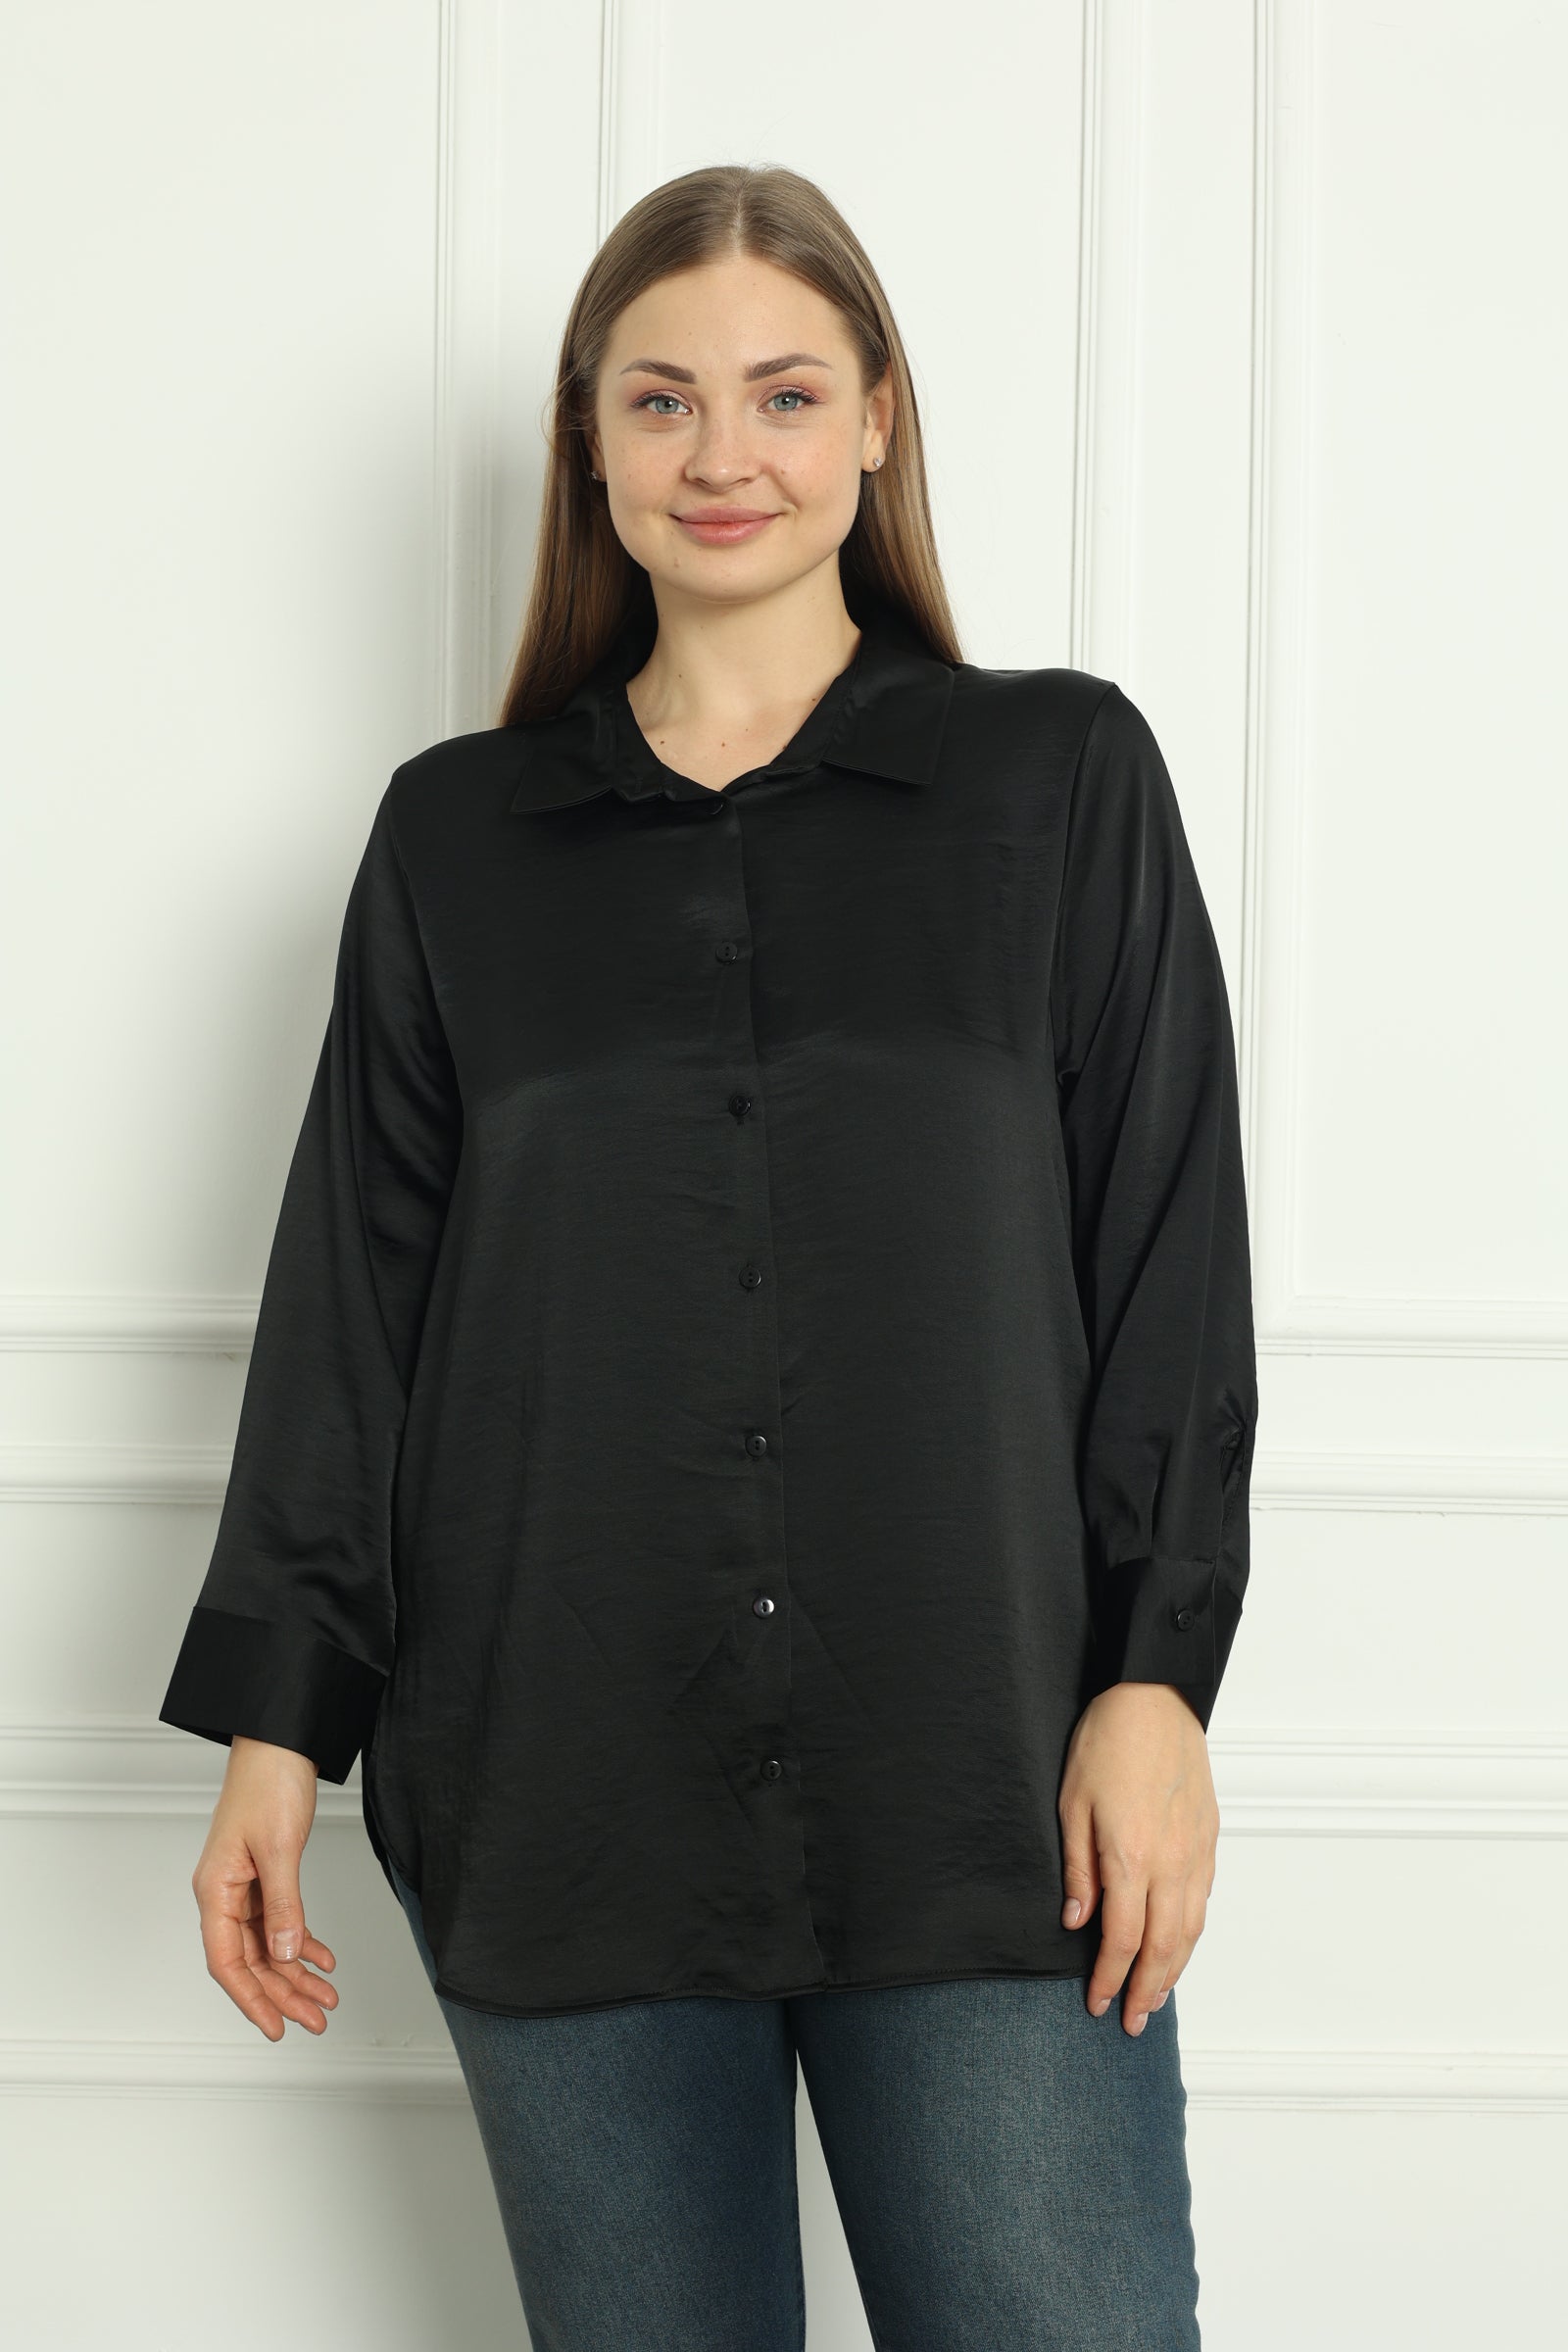 Γυναικείο πουκάμισο πολυτέλειας σε μεγάλα μεγέθη- Μαύρο